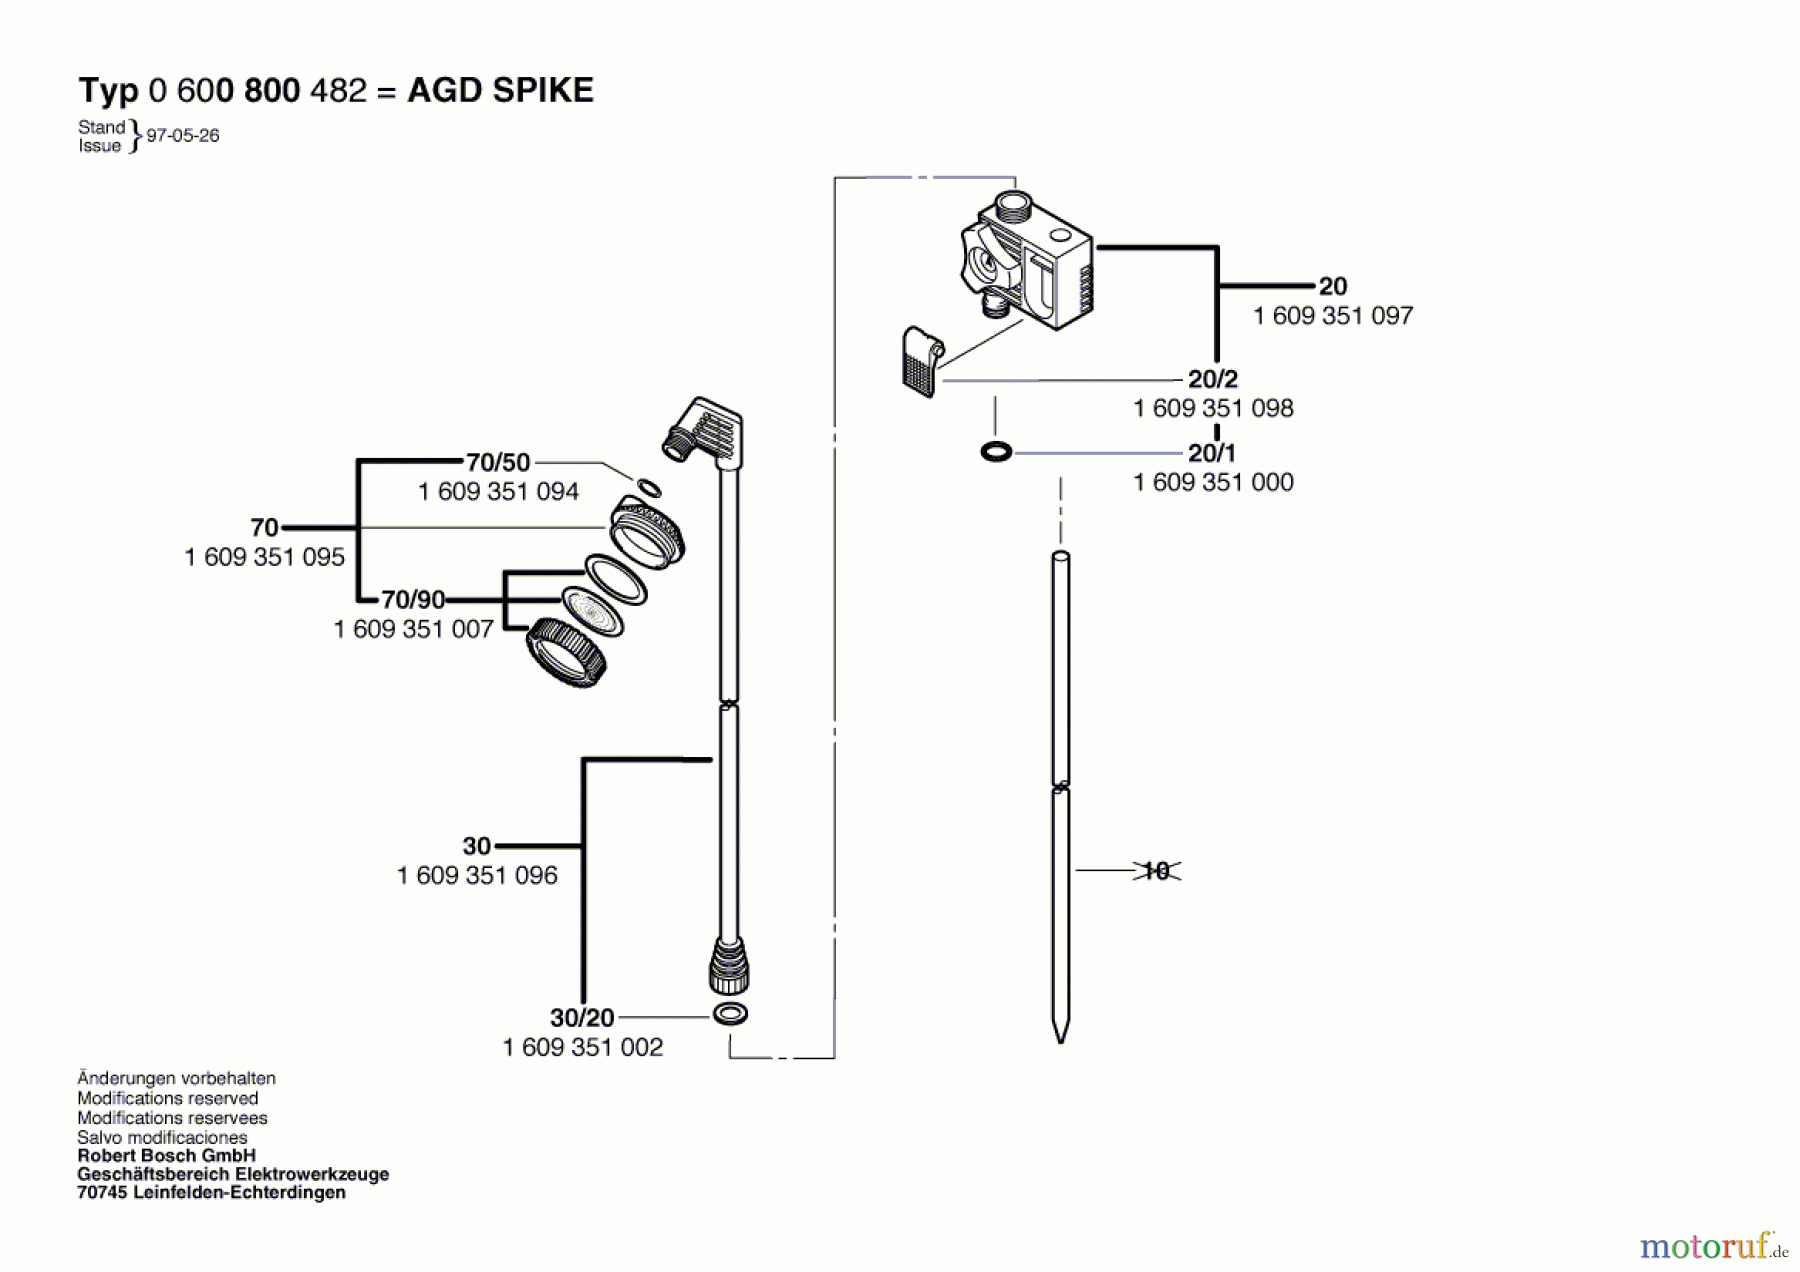  Bosch Wassertechnik Dusche AGD SPIKE Seite 1